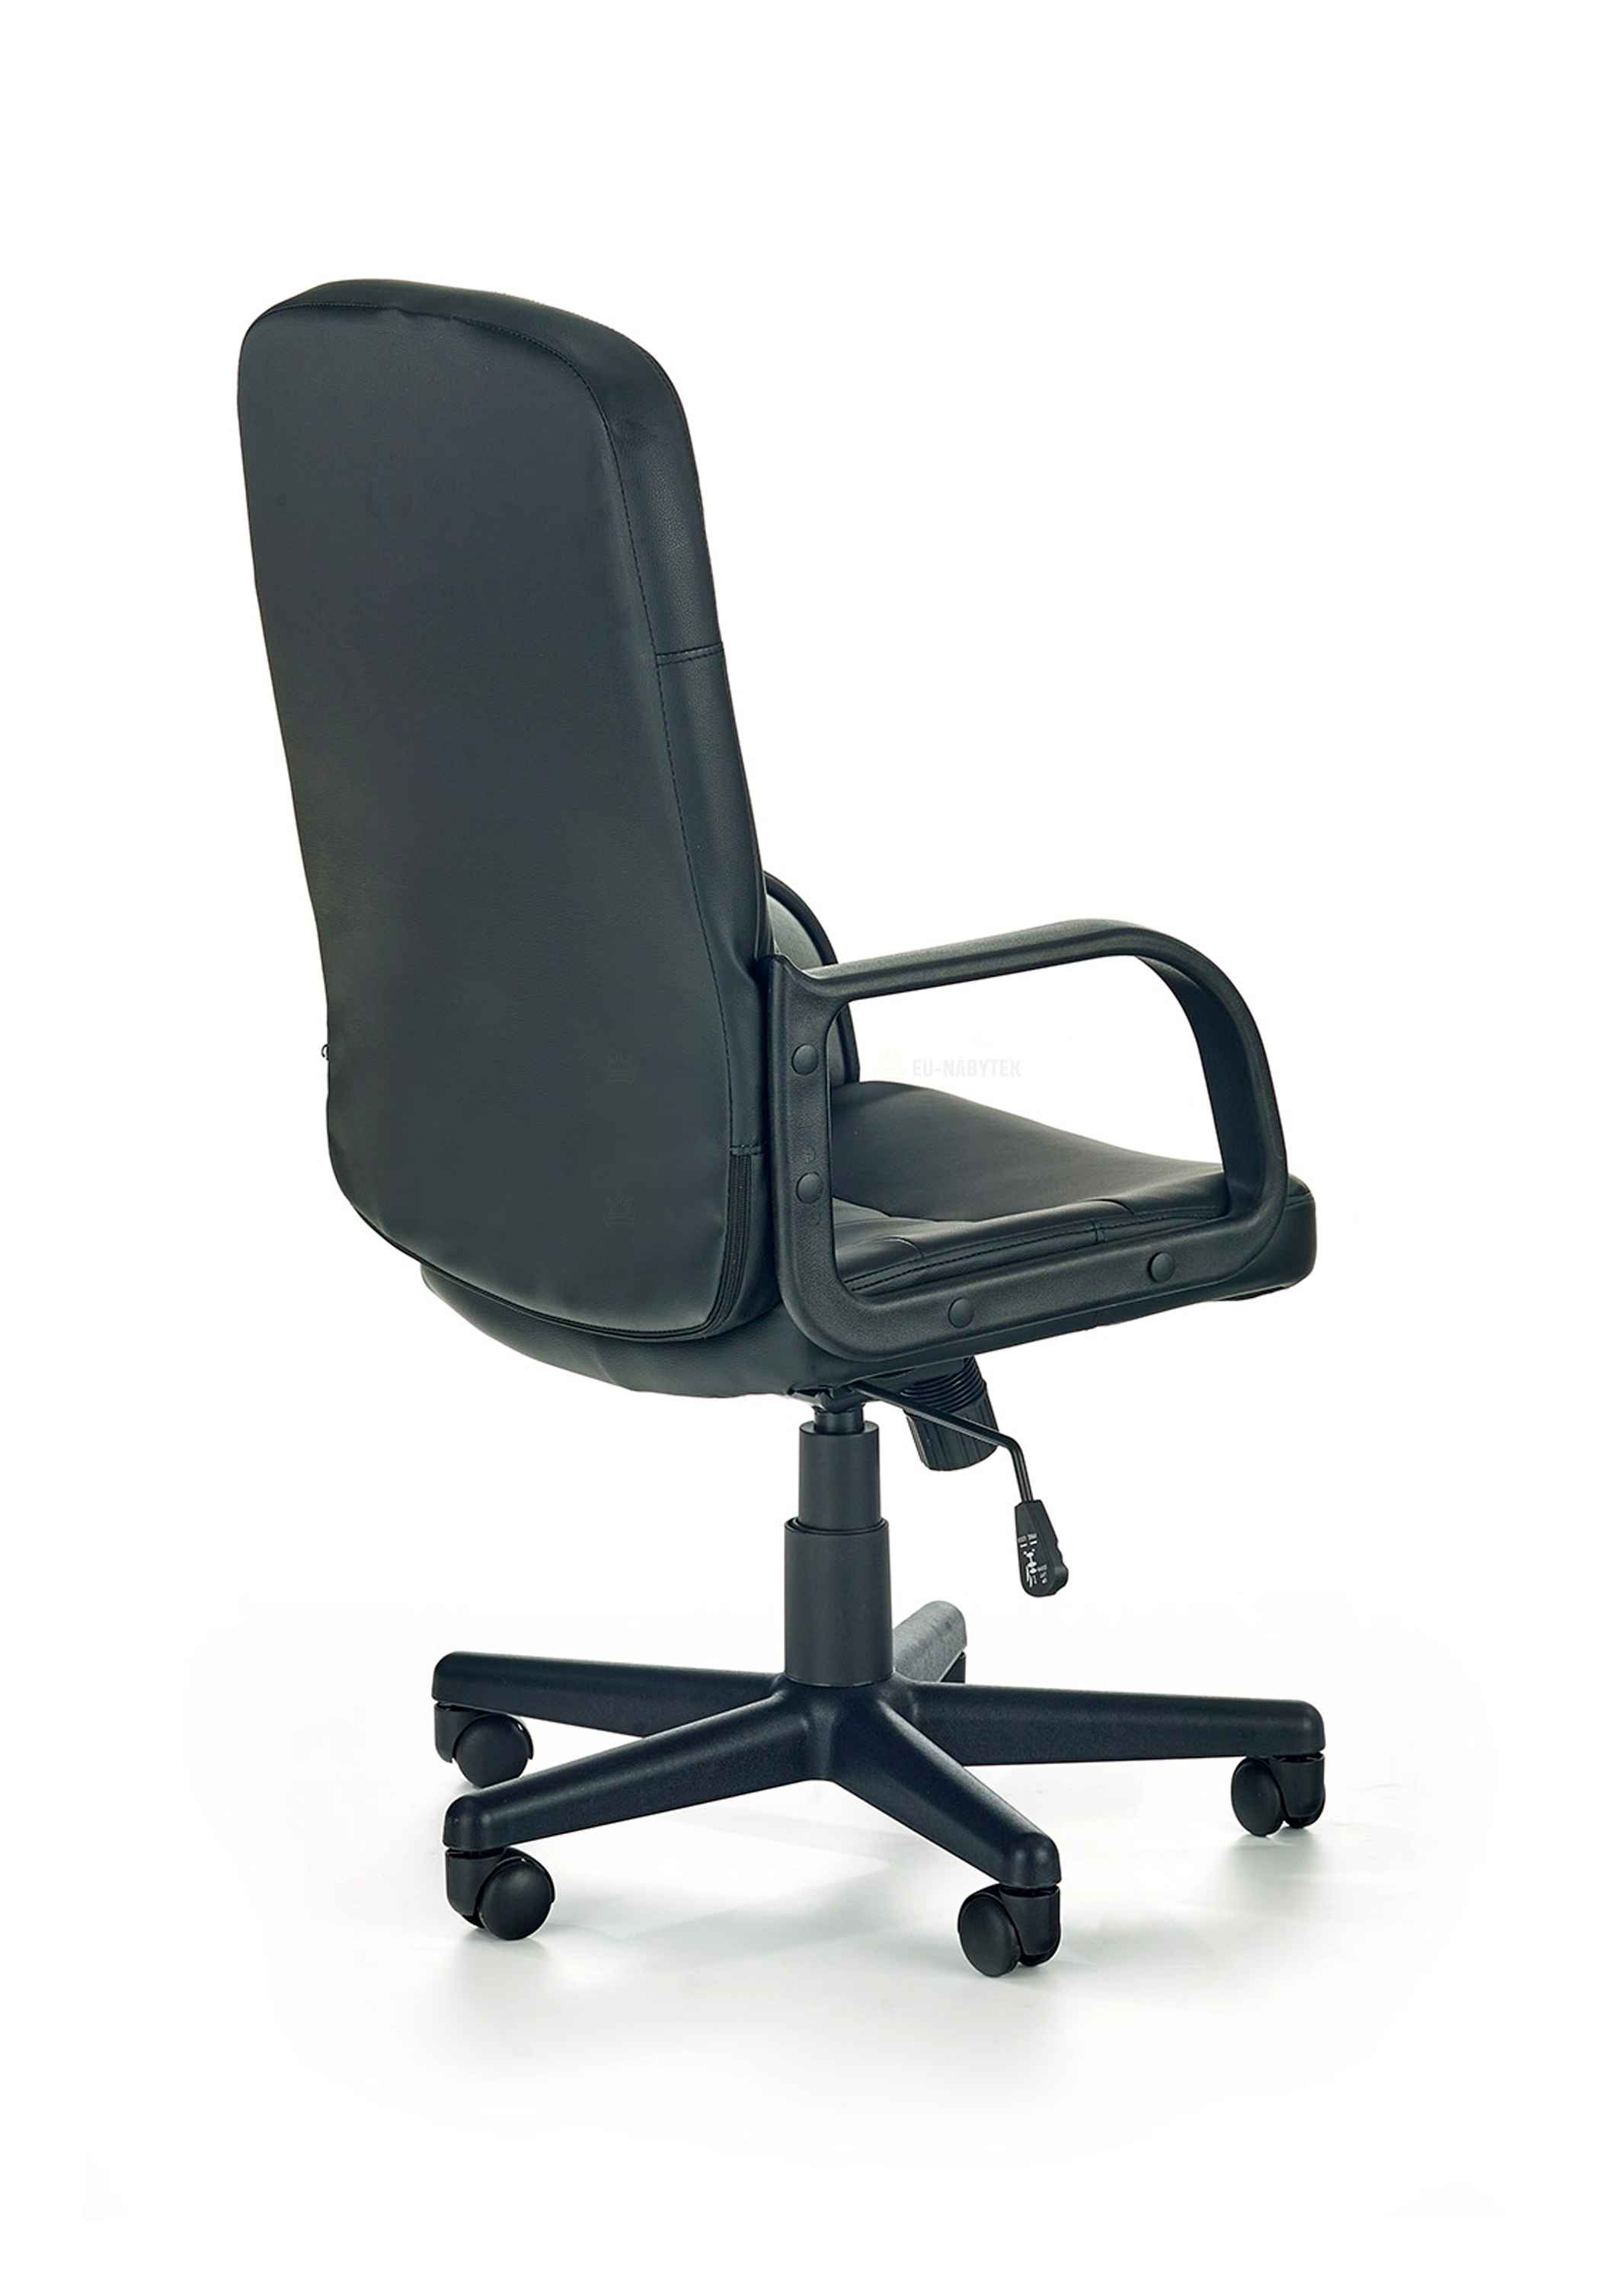 Kancelářská židle DENZEL černá